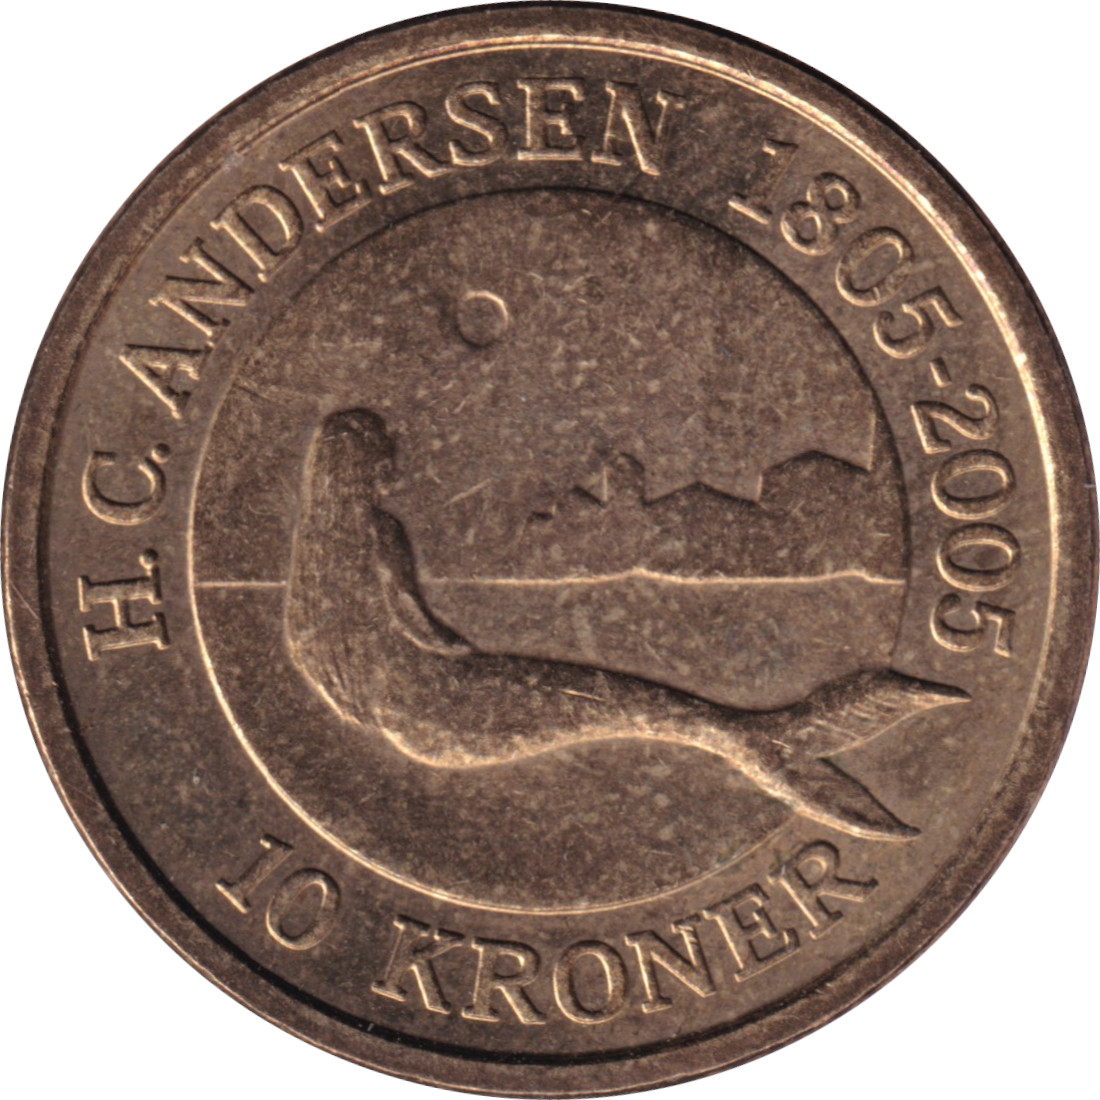 10 kroner - La petite sirène